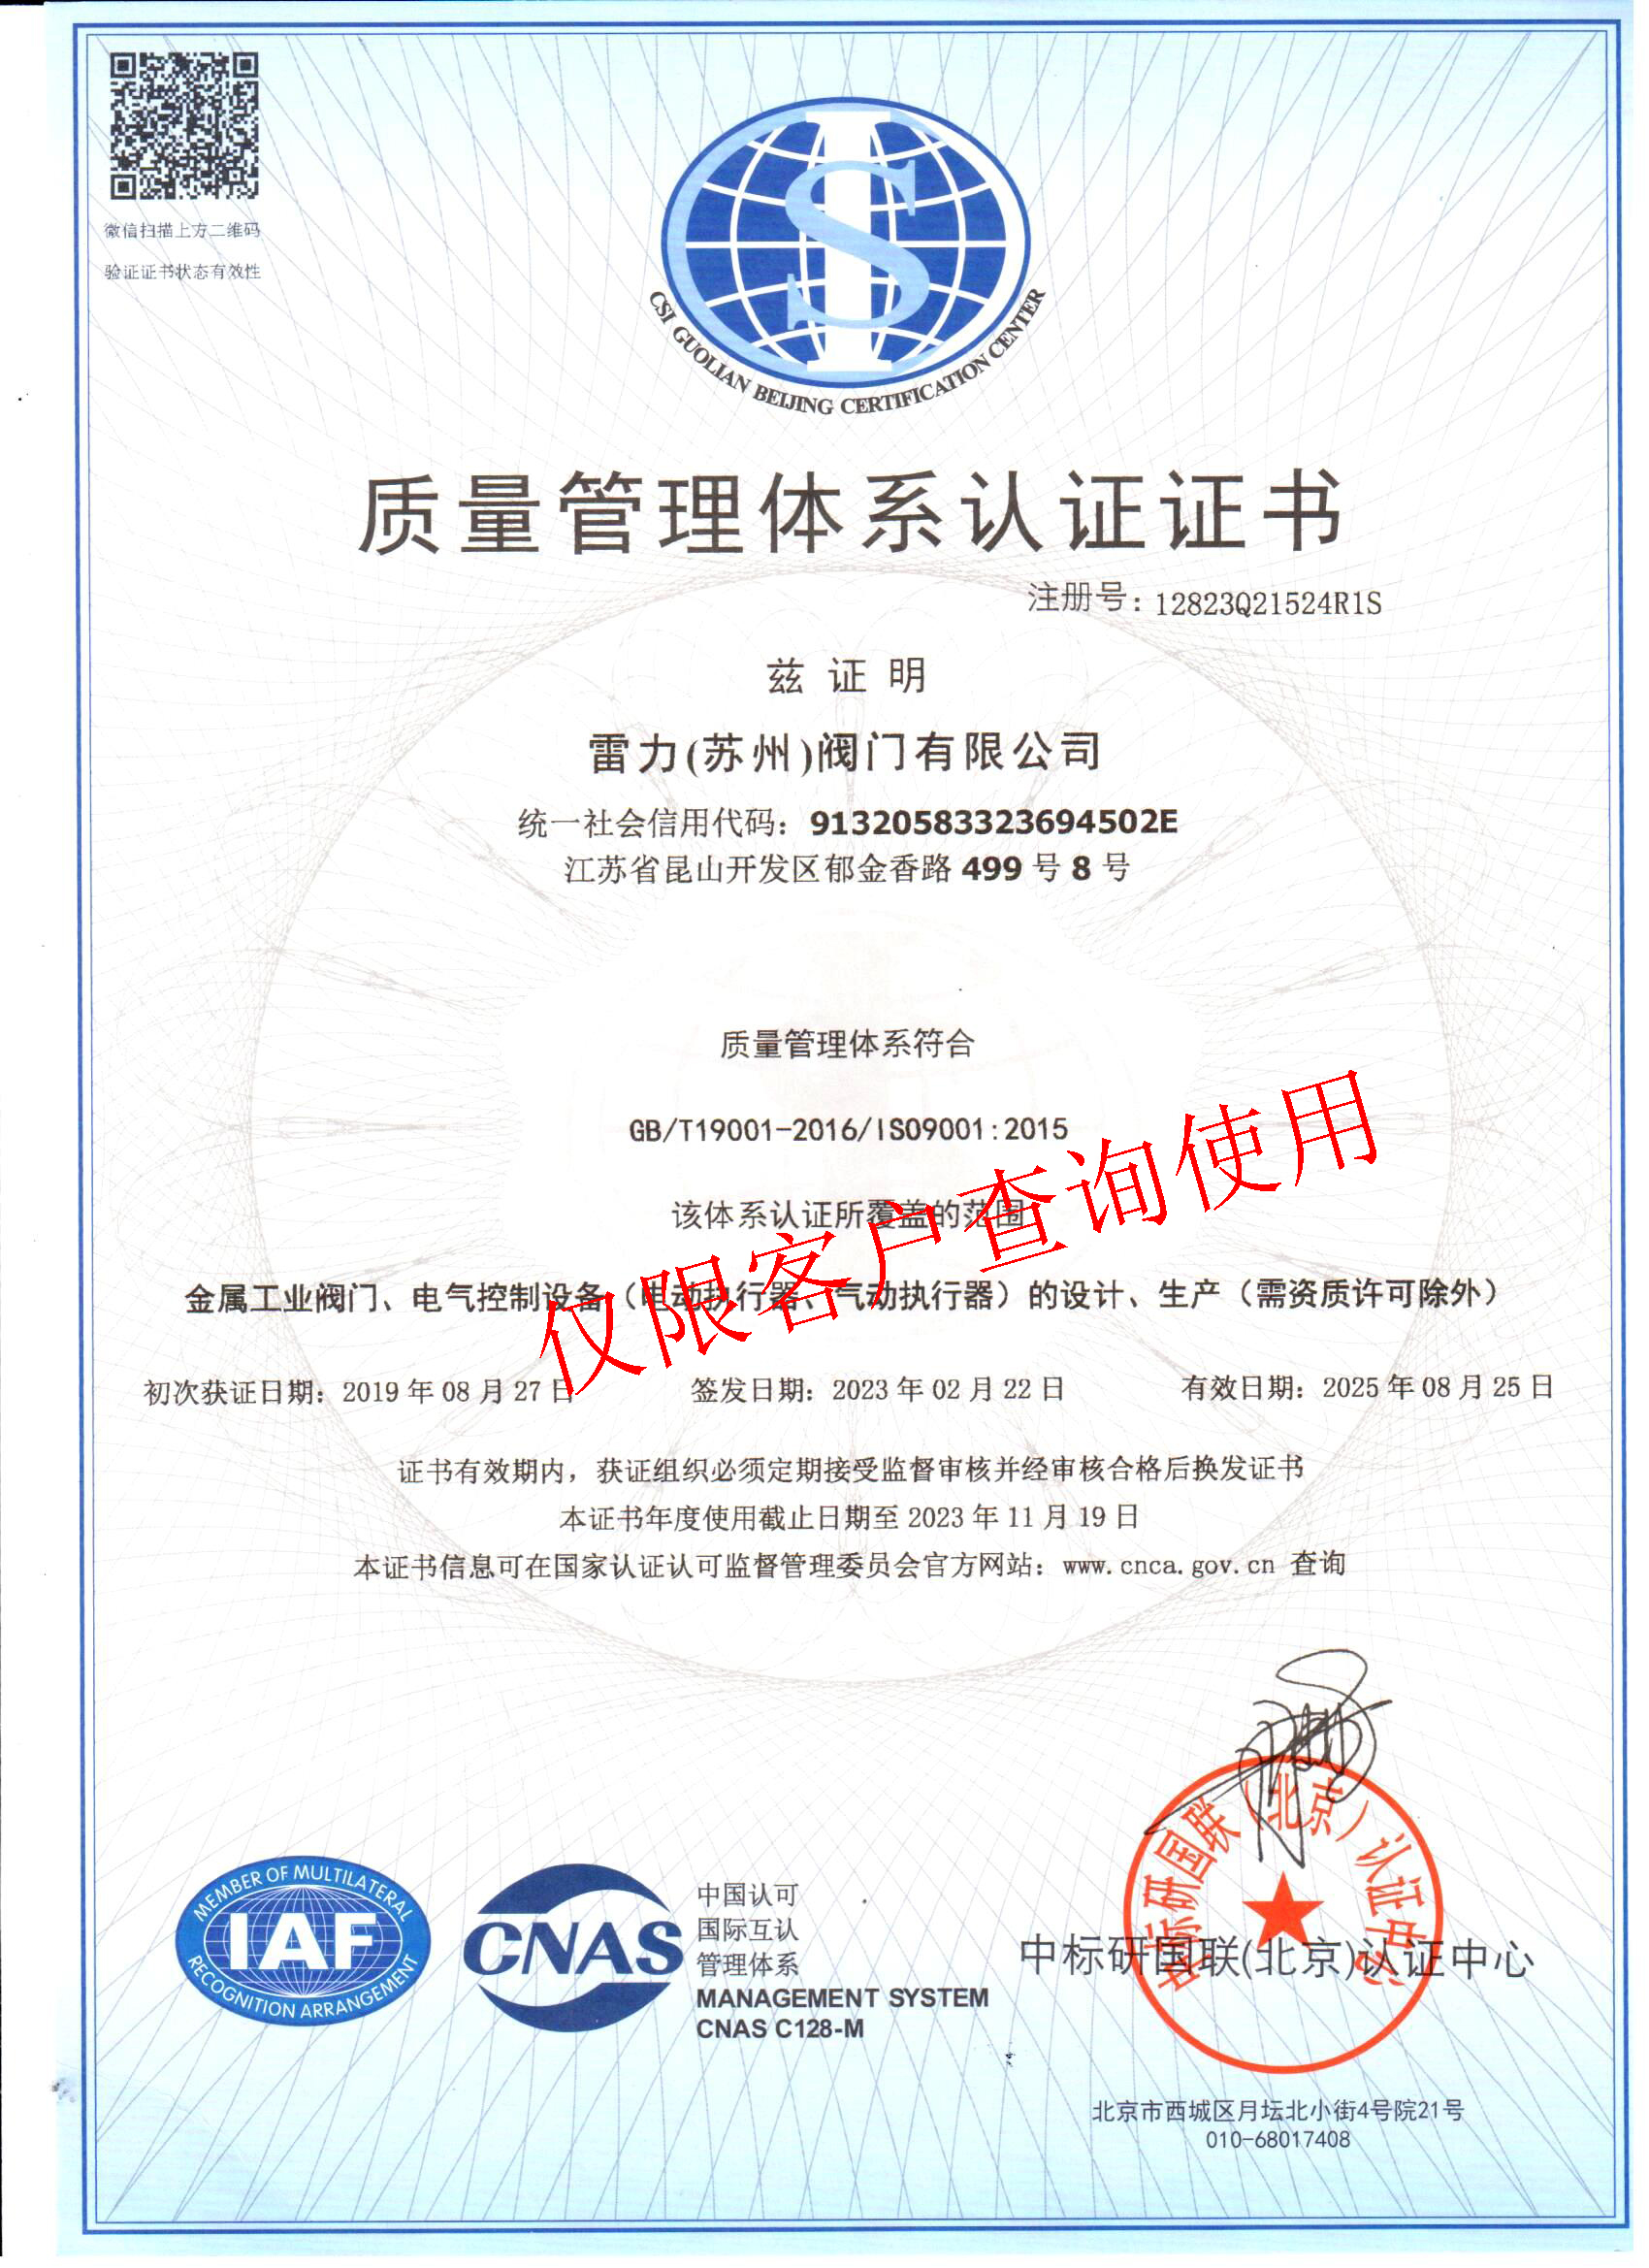 苏州雷力-ISO9001质量管理体系认证-中文.jpg